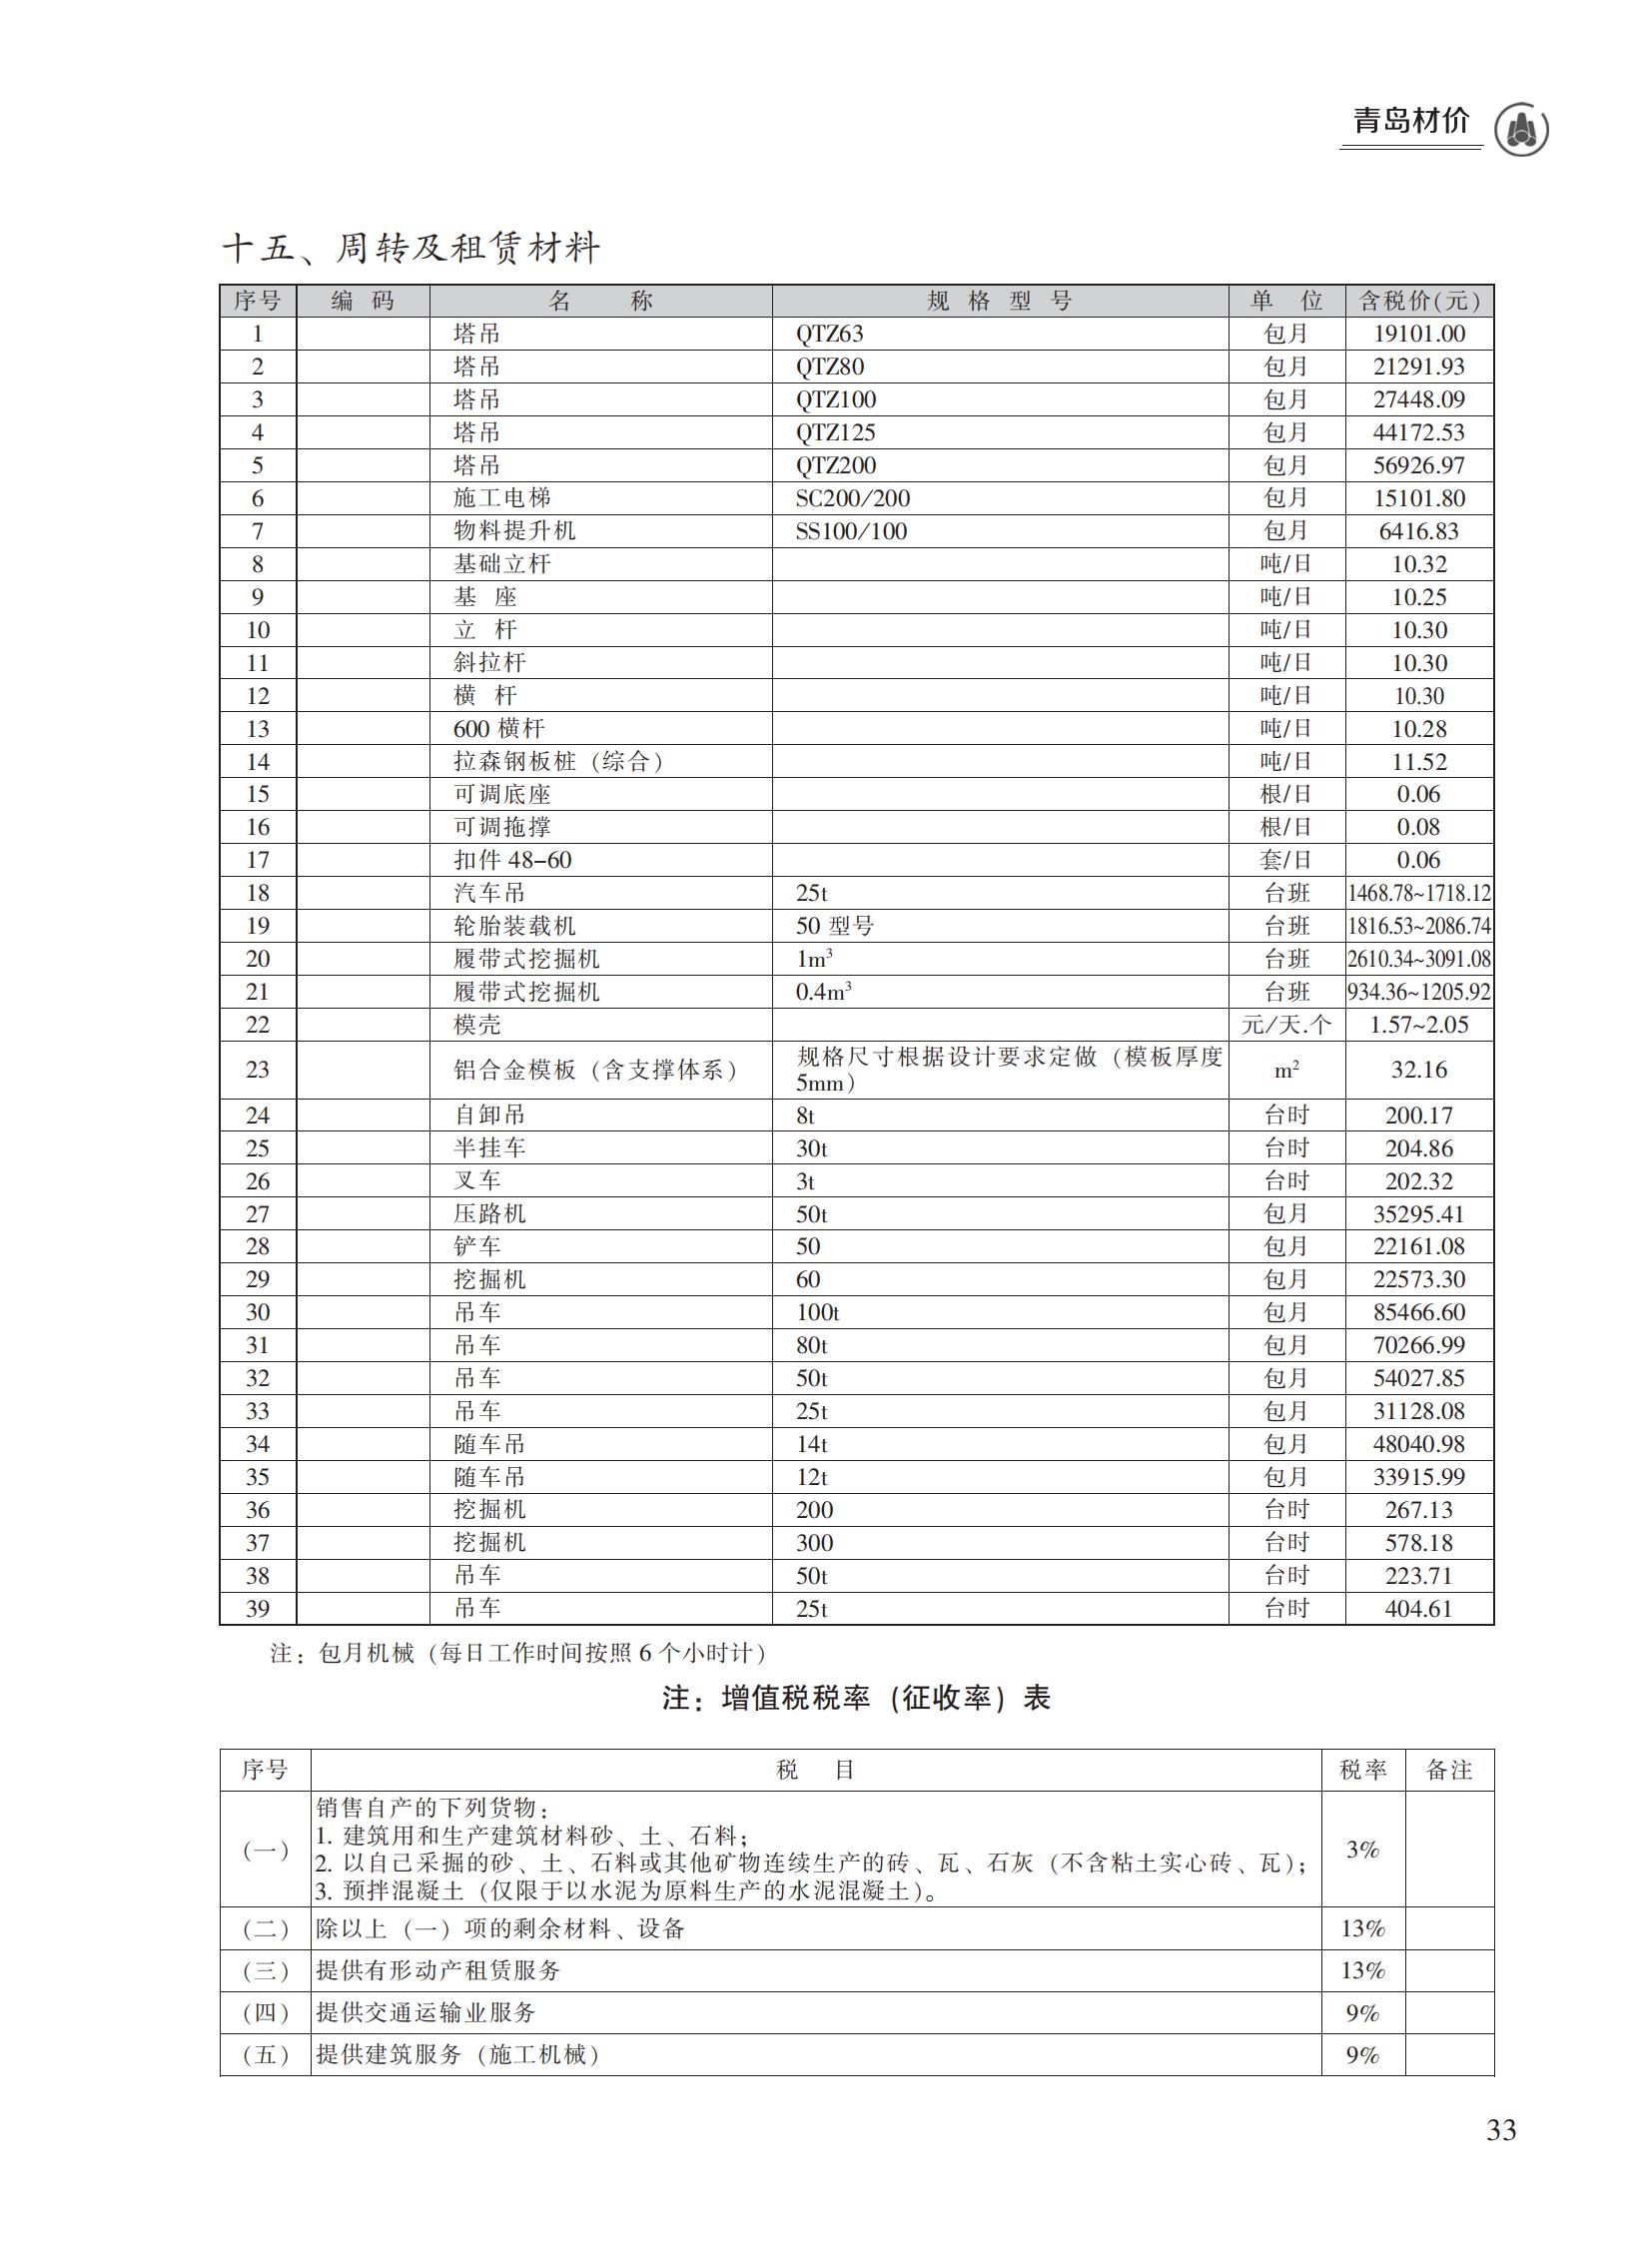 2023年4月青岛市建设工程材料价格及造价指数_32.jpg